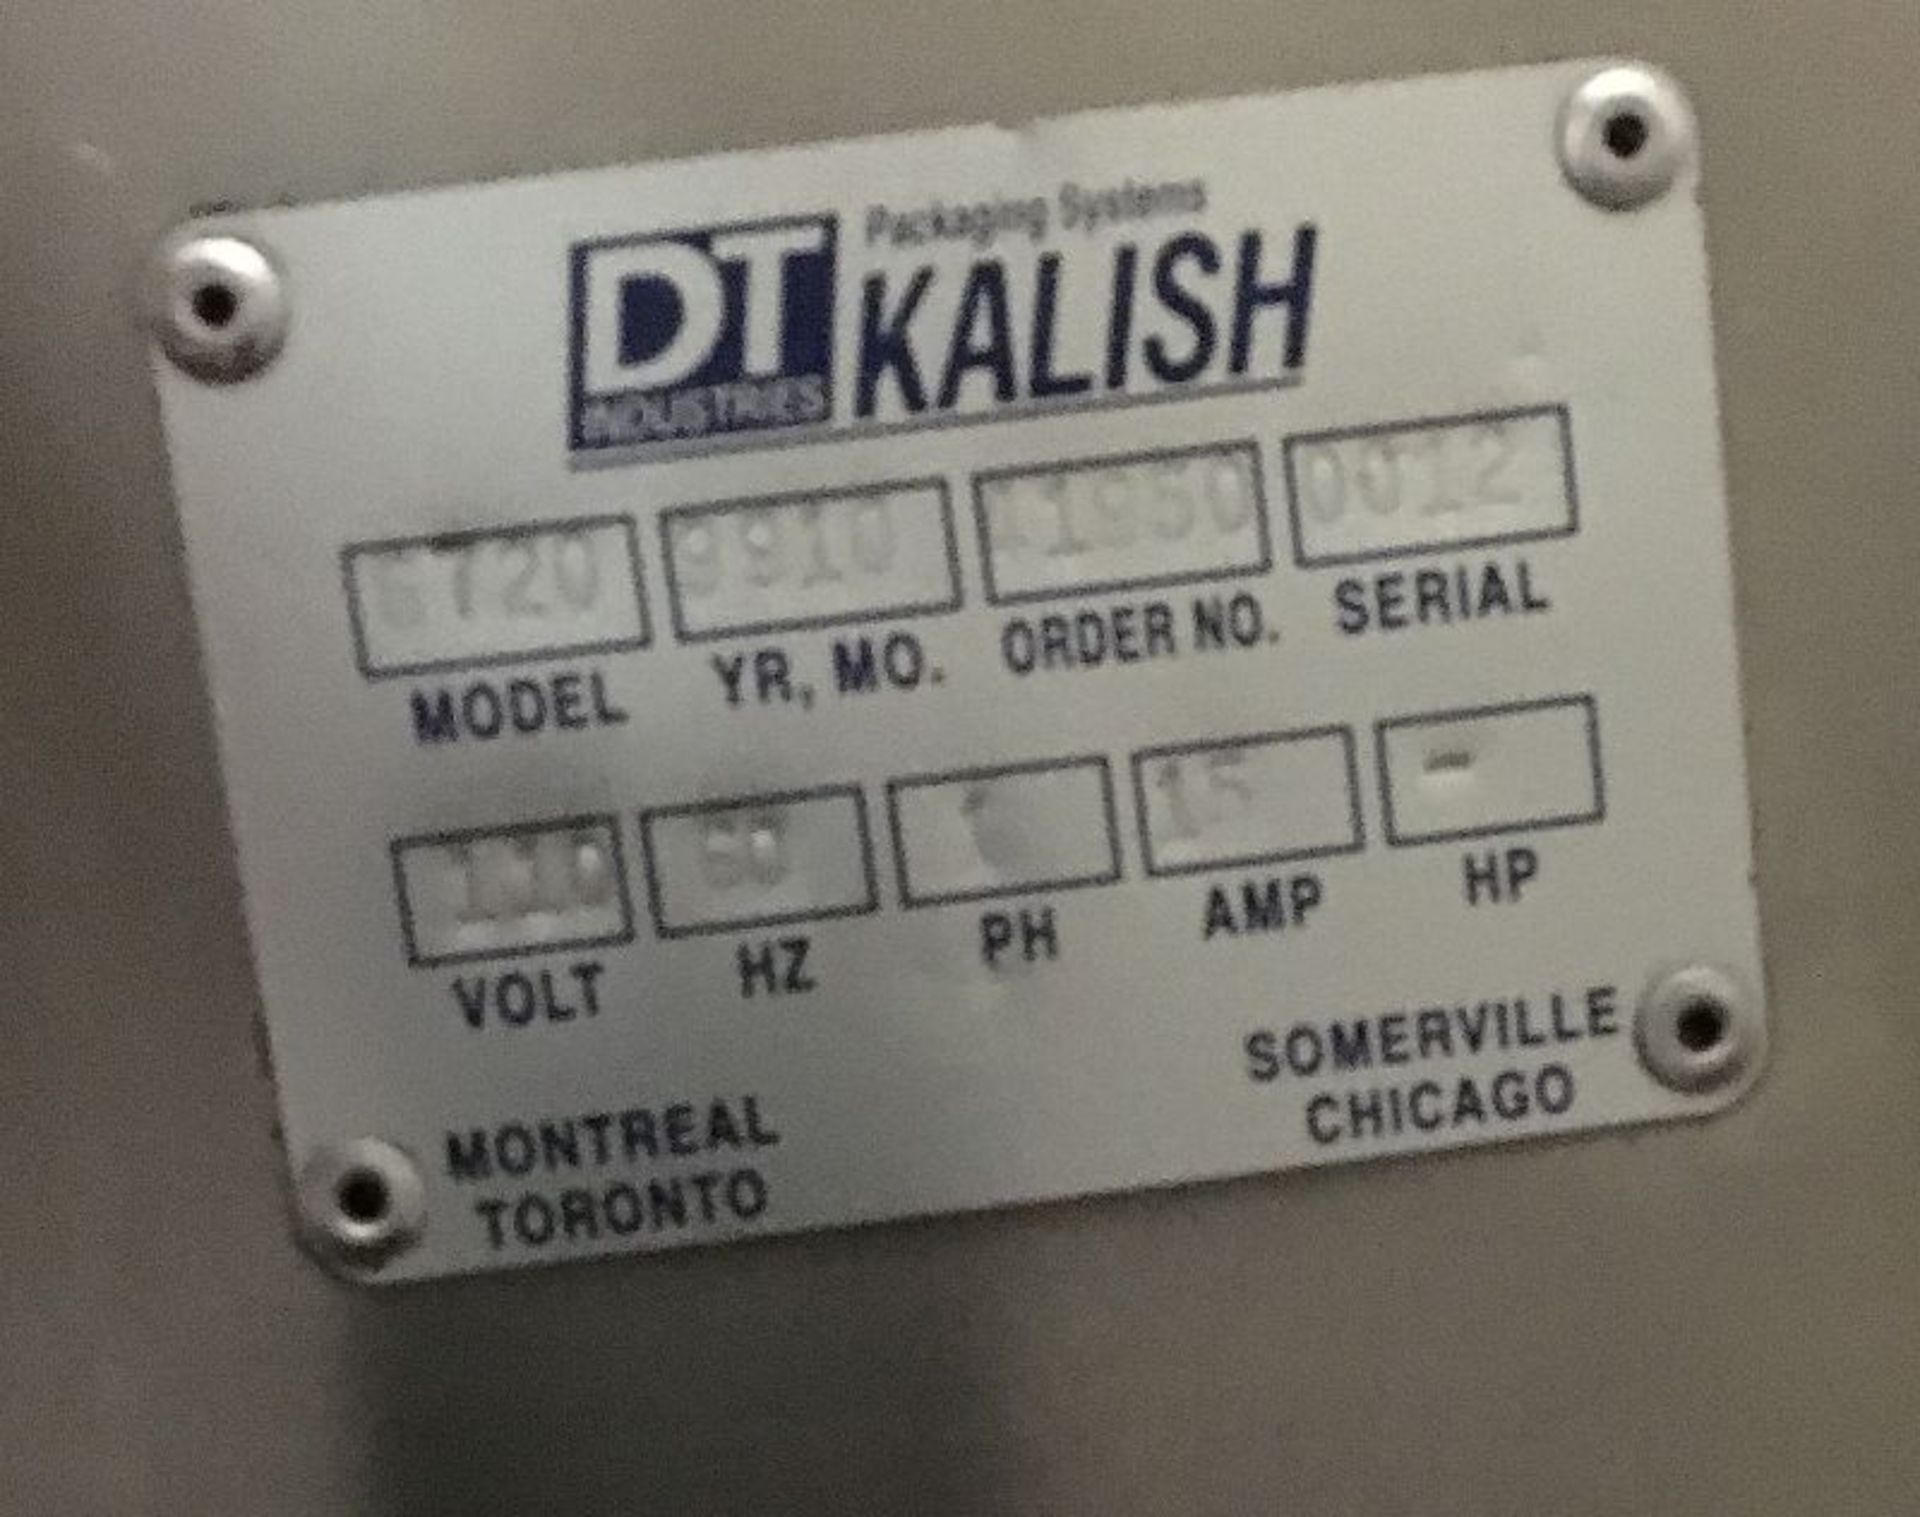 DT Kalish Labelstar Labeler - NO RESERVE - Model Labelstar 6720, Serial 11950, 110 Volts, 60Hz, 1 - Image 5 of 5